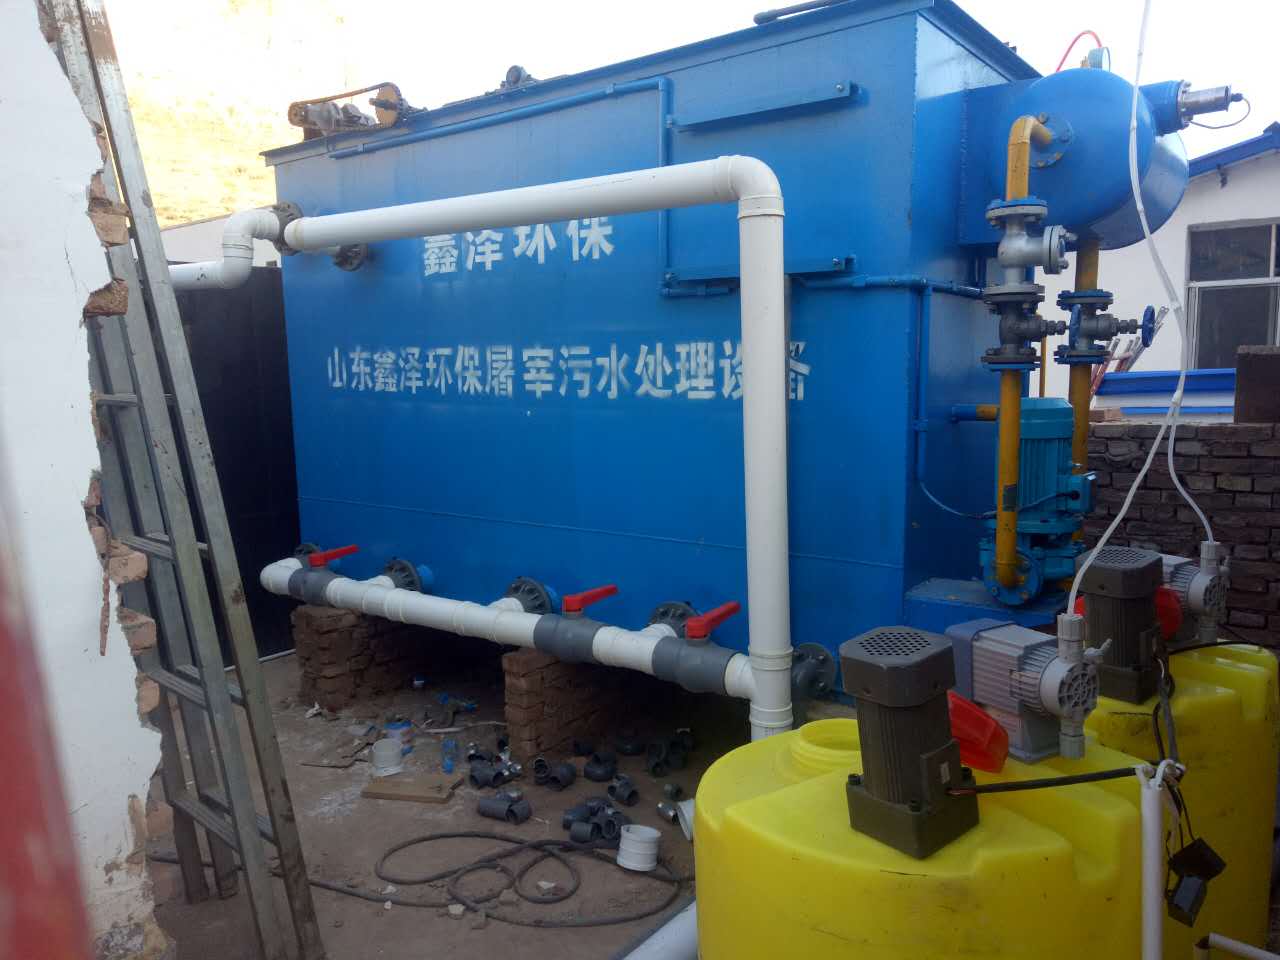 包头市洗涤公司污水处理设备一体化生产厂家在